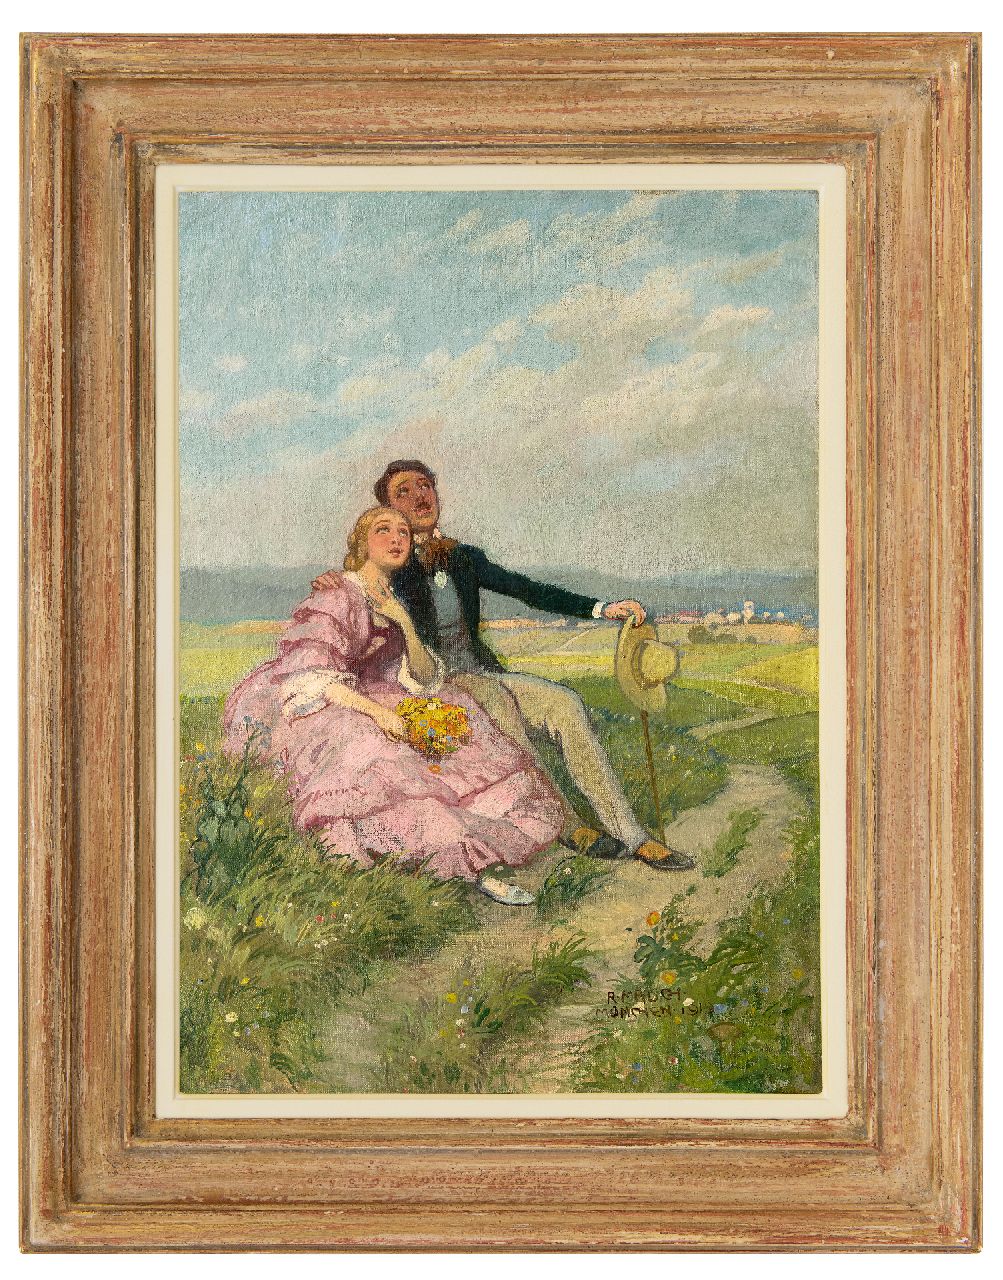 Mauch R.  | Richard Mauch | Schilderijen te koop aangeboden | Romantische zondagmiddag, olieverf op doek 50,8 x 36,5 cm, gesigneerd rechtsonder en gedateerd 'München 1919'